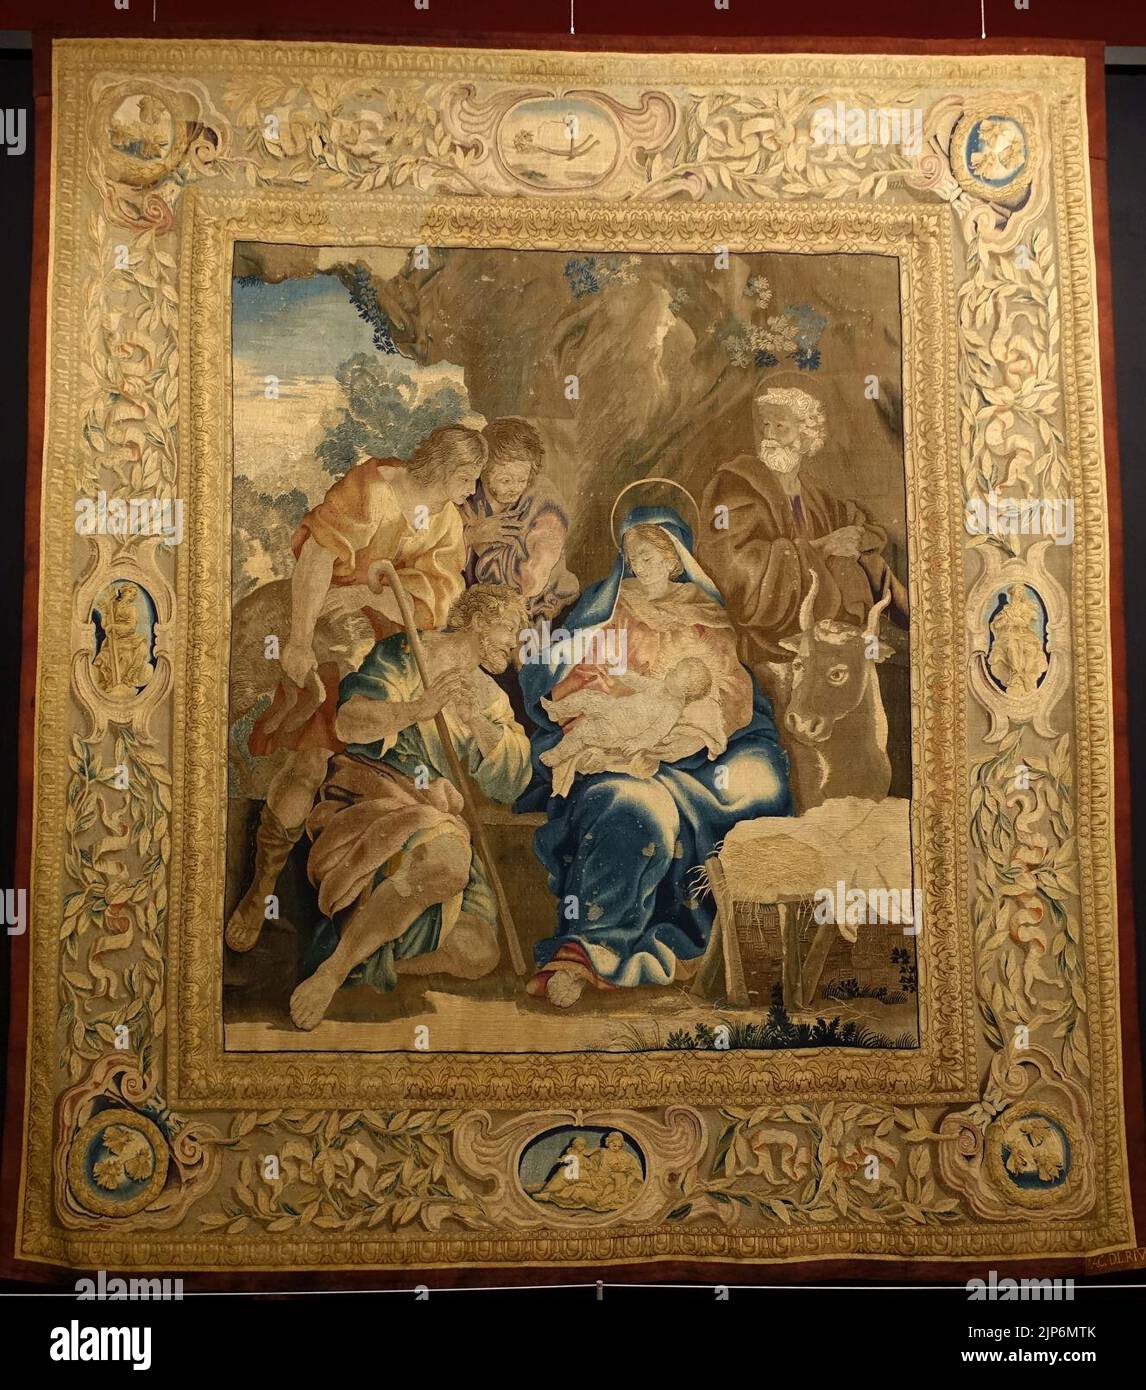 La Natività, dalla vita di Cristo, arazzi Barberini, Roma, 1644-1656 Foto Stock